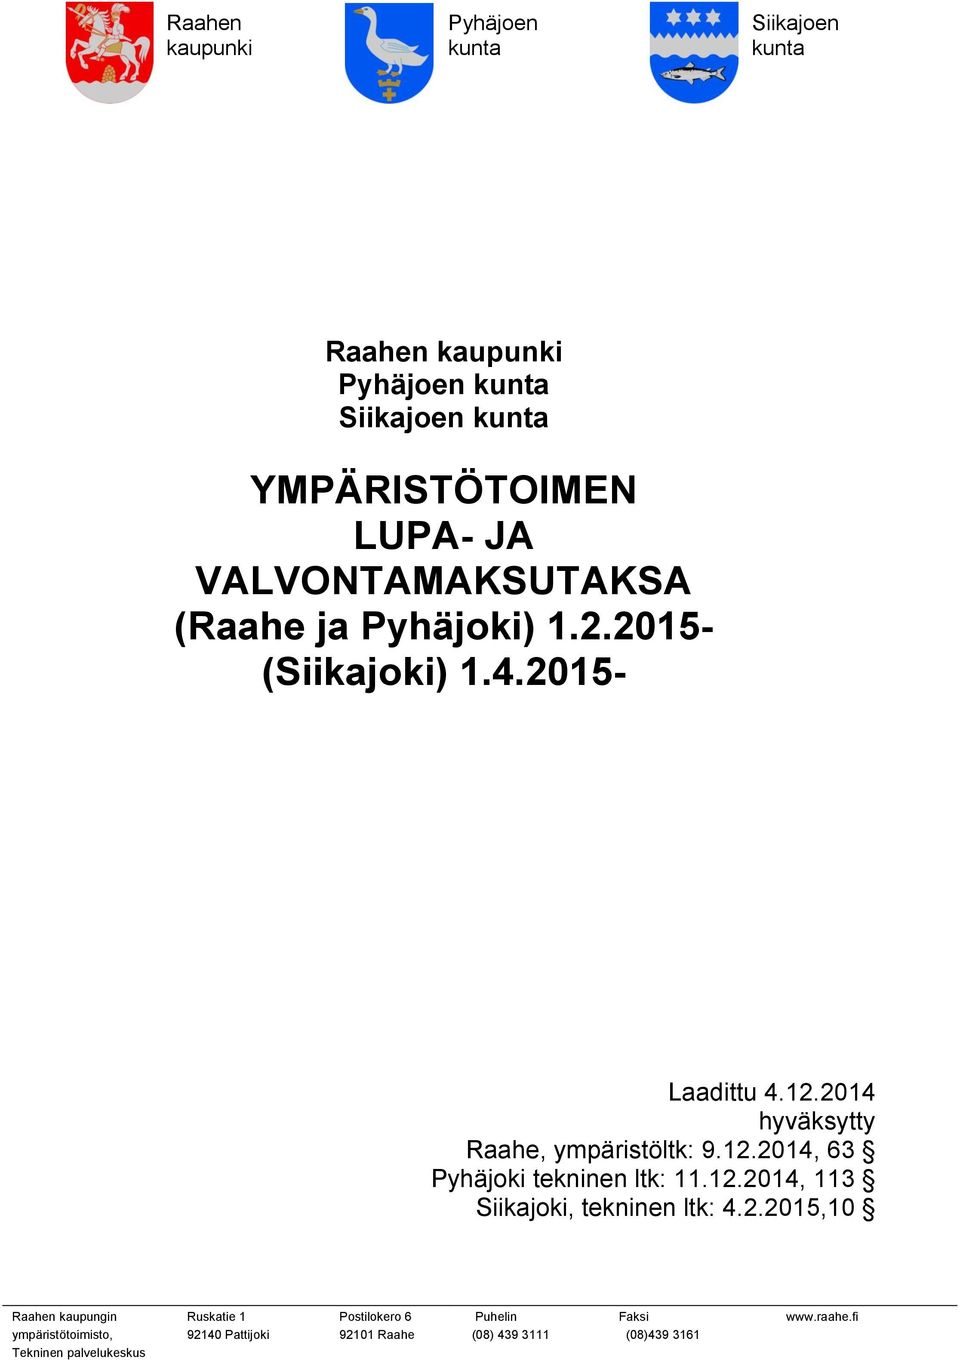 2.2015- (Siikajoki) 1.4.2015- Laadittu 4.12.2014 hyväksytty Raahe, ympäristöltk: 9.